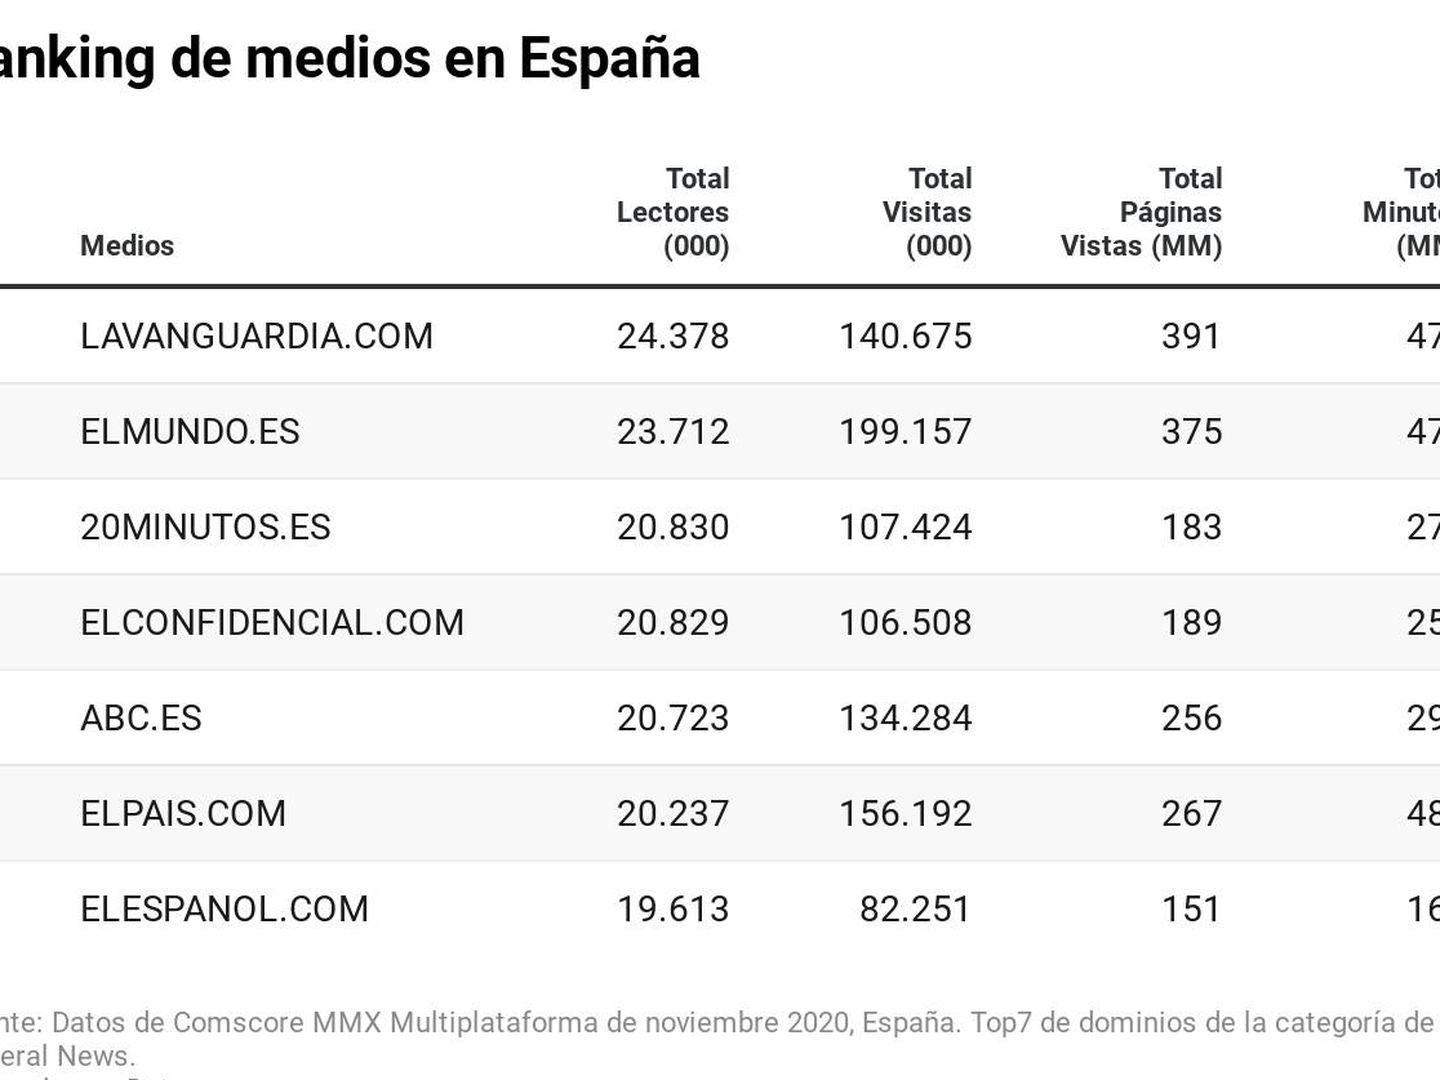 Fuente: Dtos de Comscore MMX Multiplataforma de noviembre 2020, España. Top7 dominios de la categoría General News.